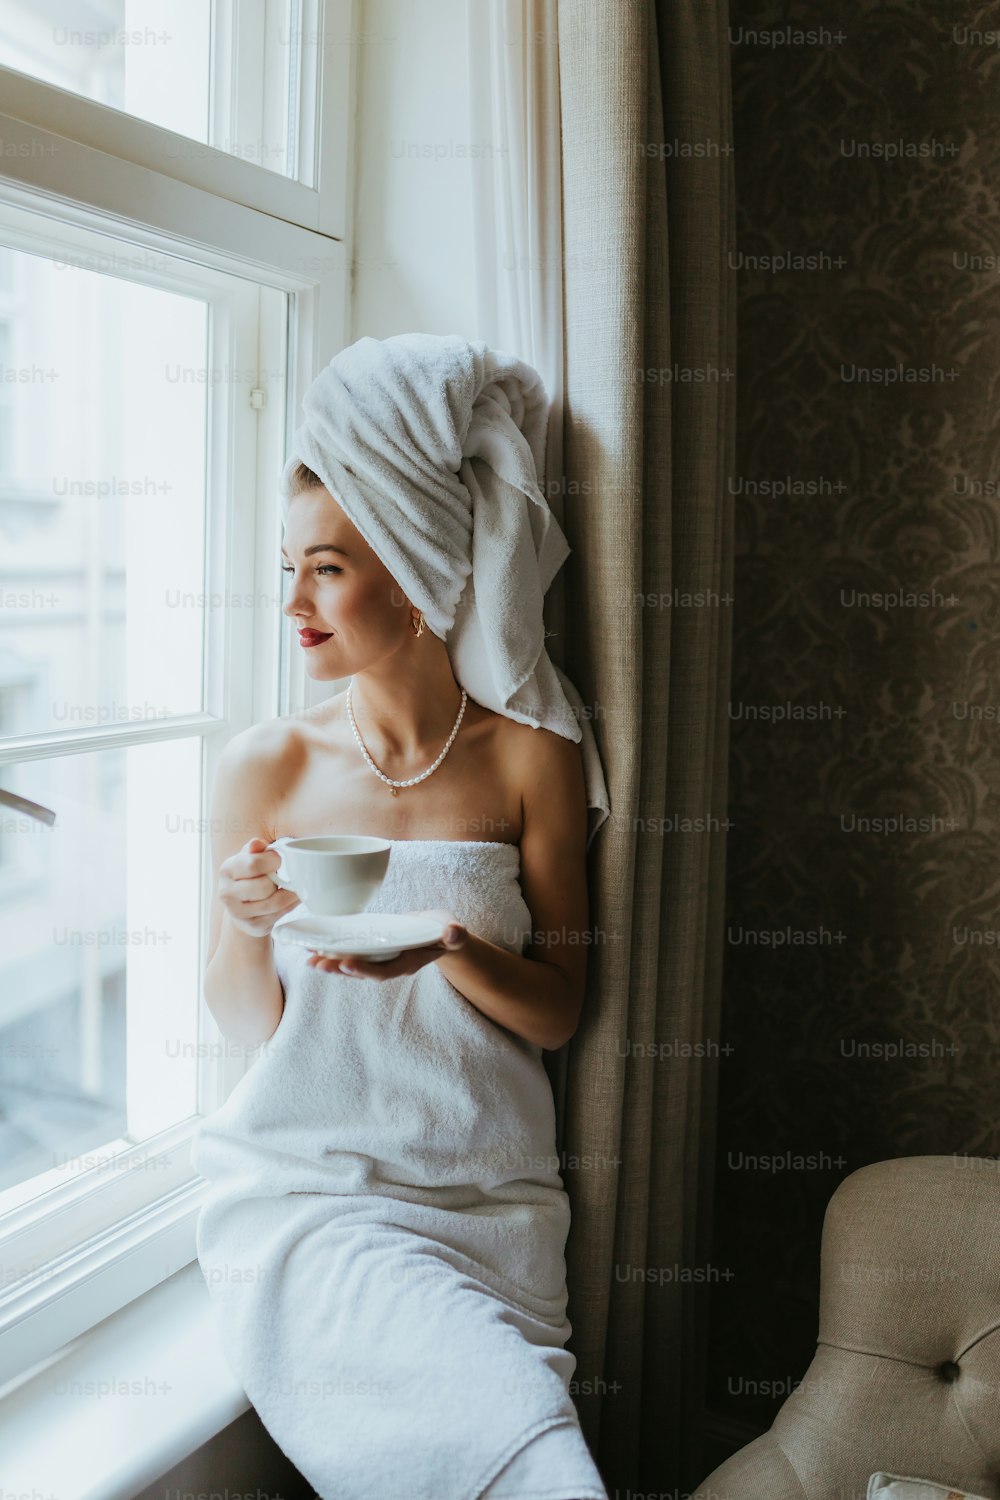 Eine Frau in einem Handtuch, die eine Tasse hält und aus dem Fenster schaut